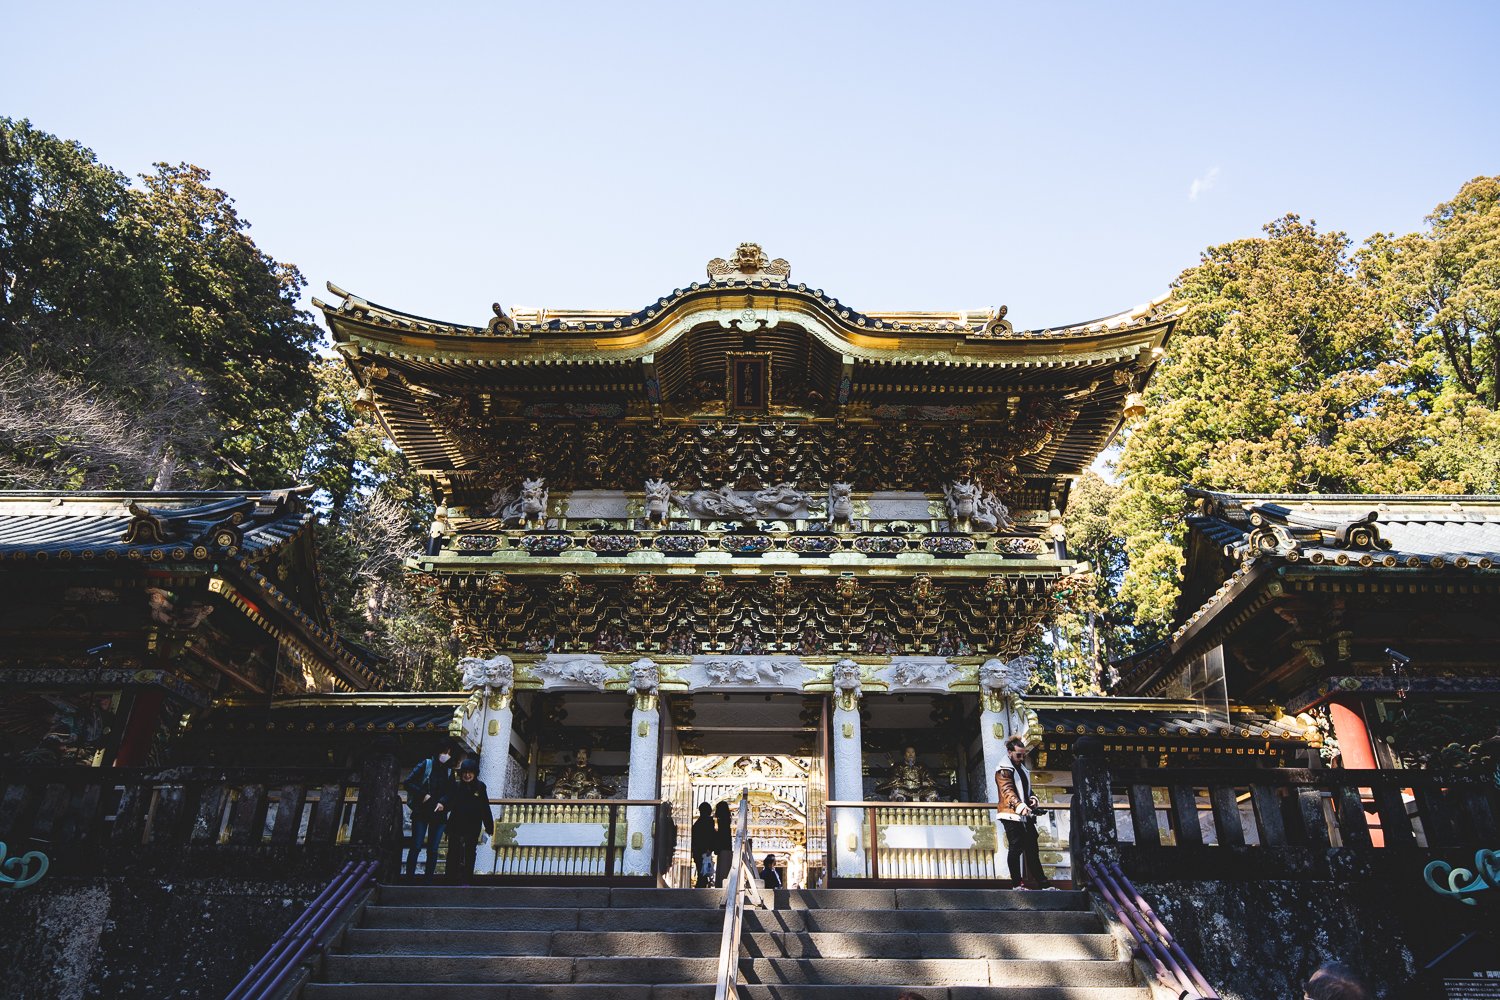 la porte Yomeimon en bois peint en blanc et or. Chaque centimètre carré semble décorré. 